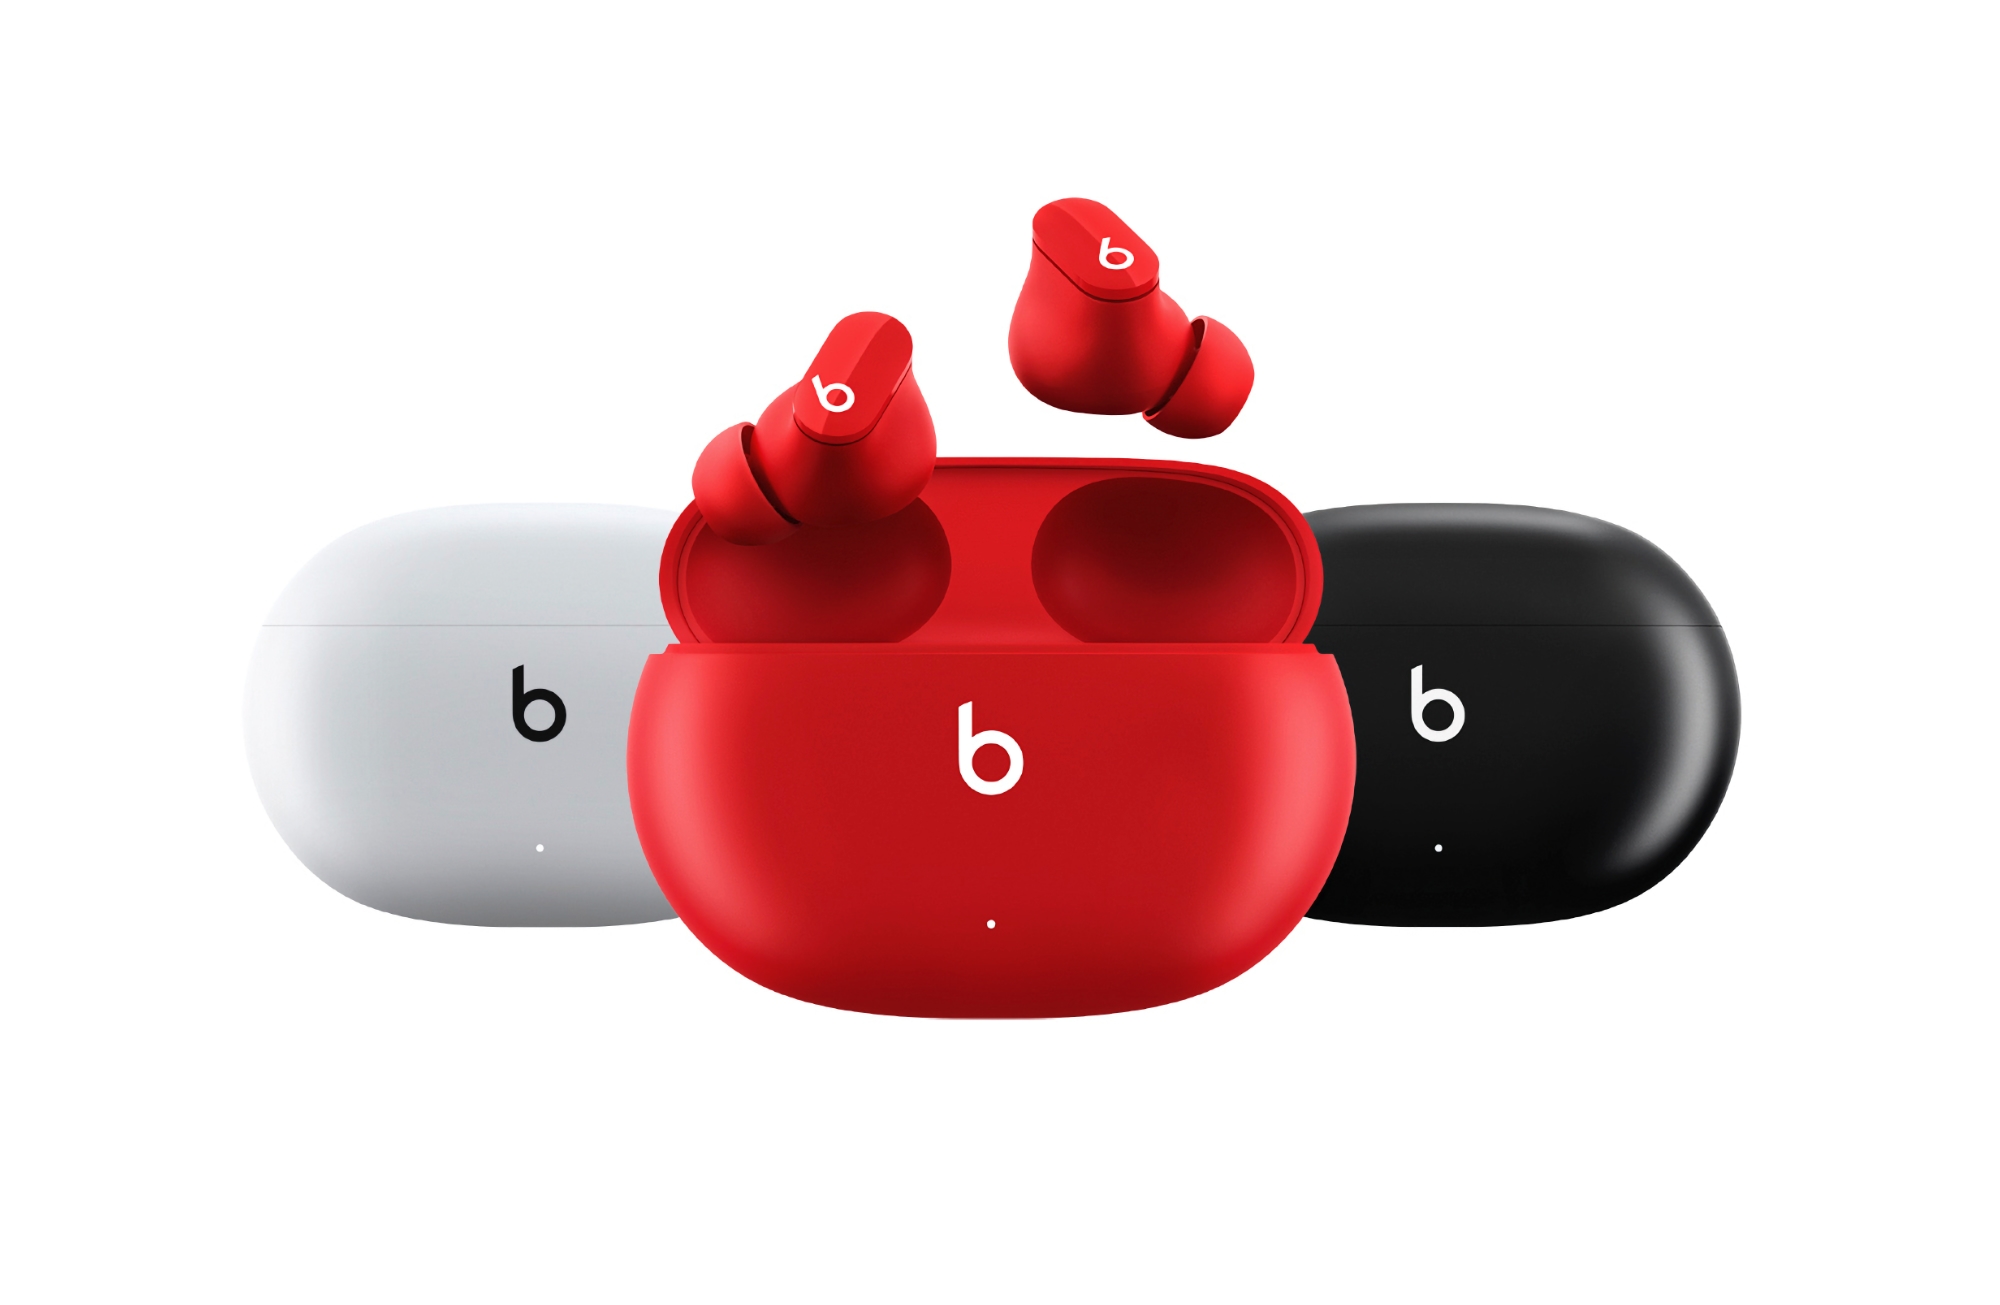 Apple udostępniło nową wersję oprogramowania sprzętowego dla słuchawek Beats Studio Buds